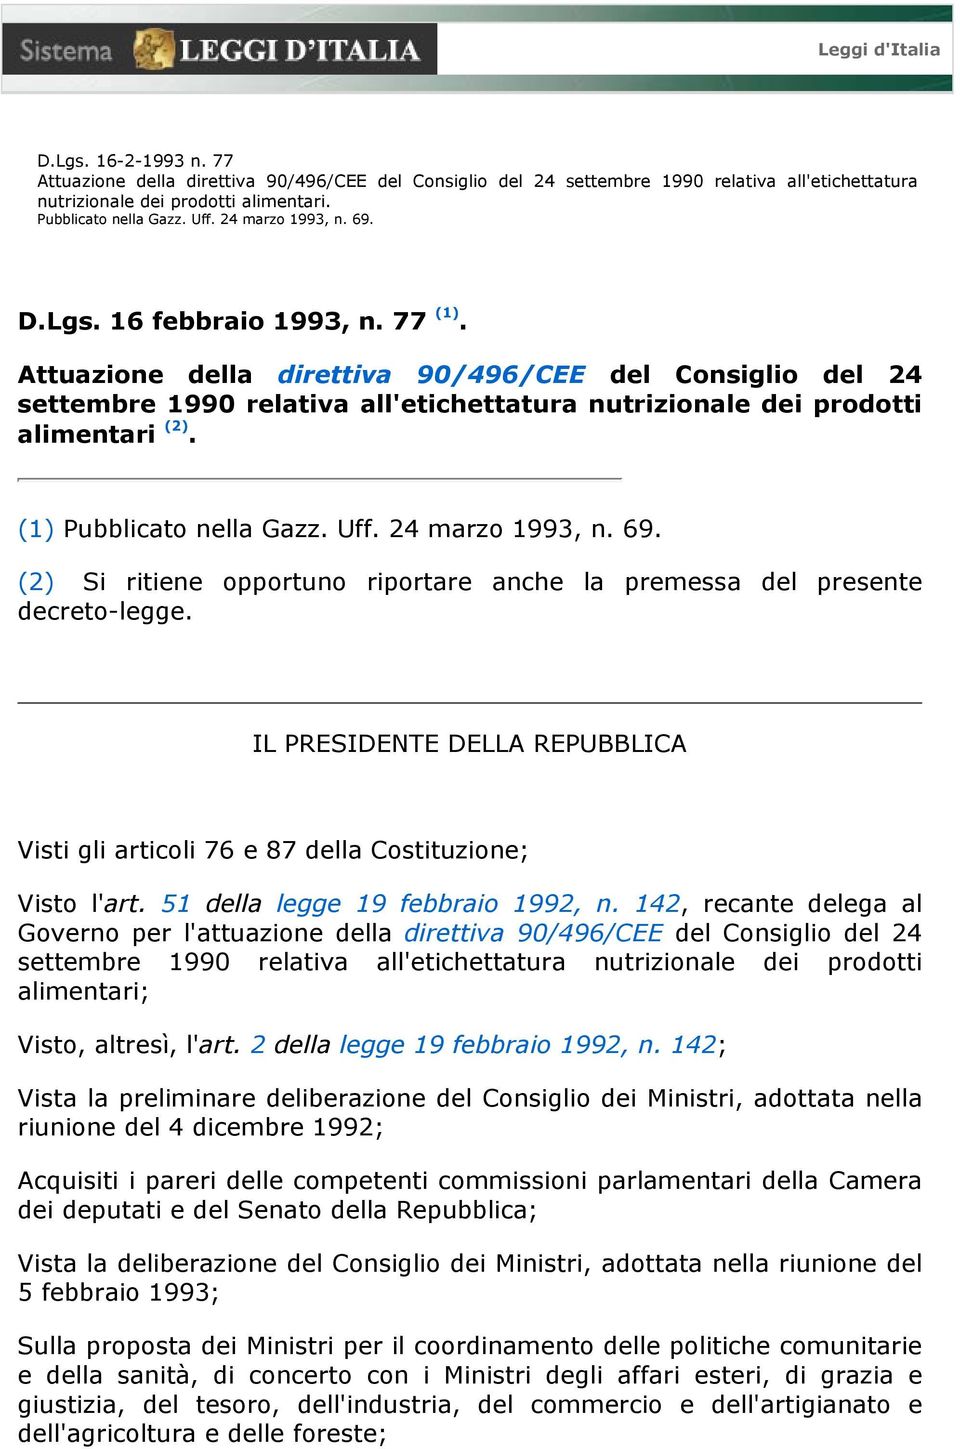 Attuazione della direttiva 90/496/CEE del Consiglio del 24 settembre 1990 relativa all'etichettatura nutrizionale dei prodotti alimentari (2). (1) Pubblicato nella Gazz. Uff. 24 marzo 1993, n. 69.